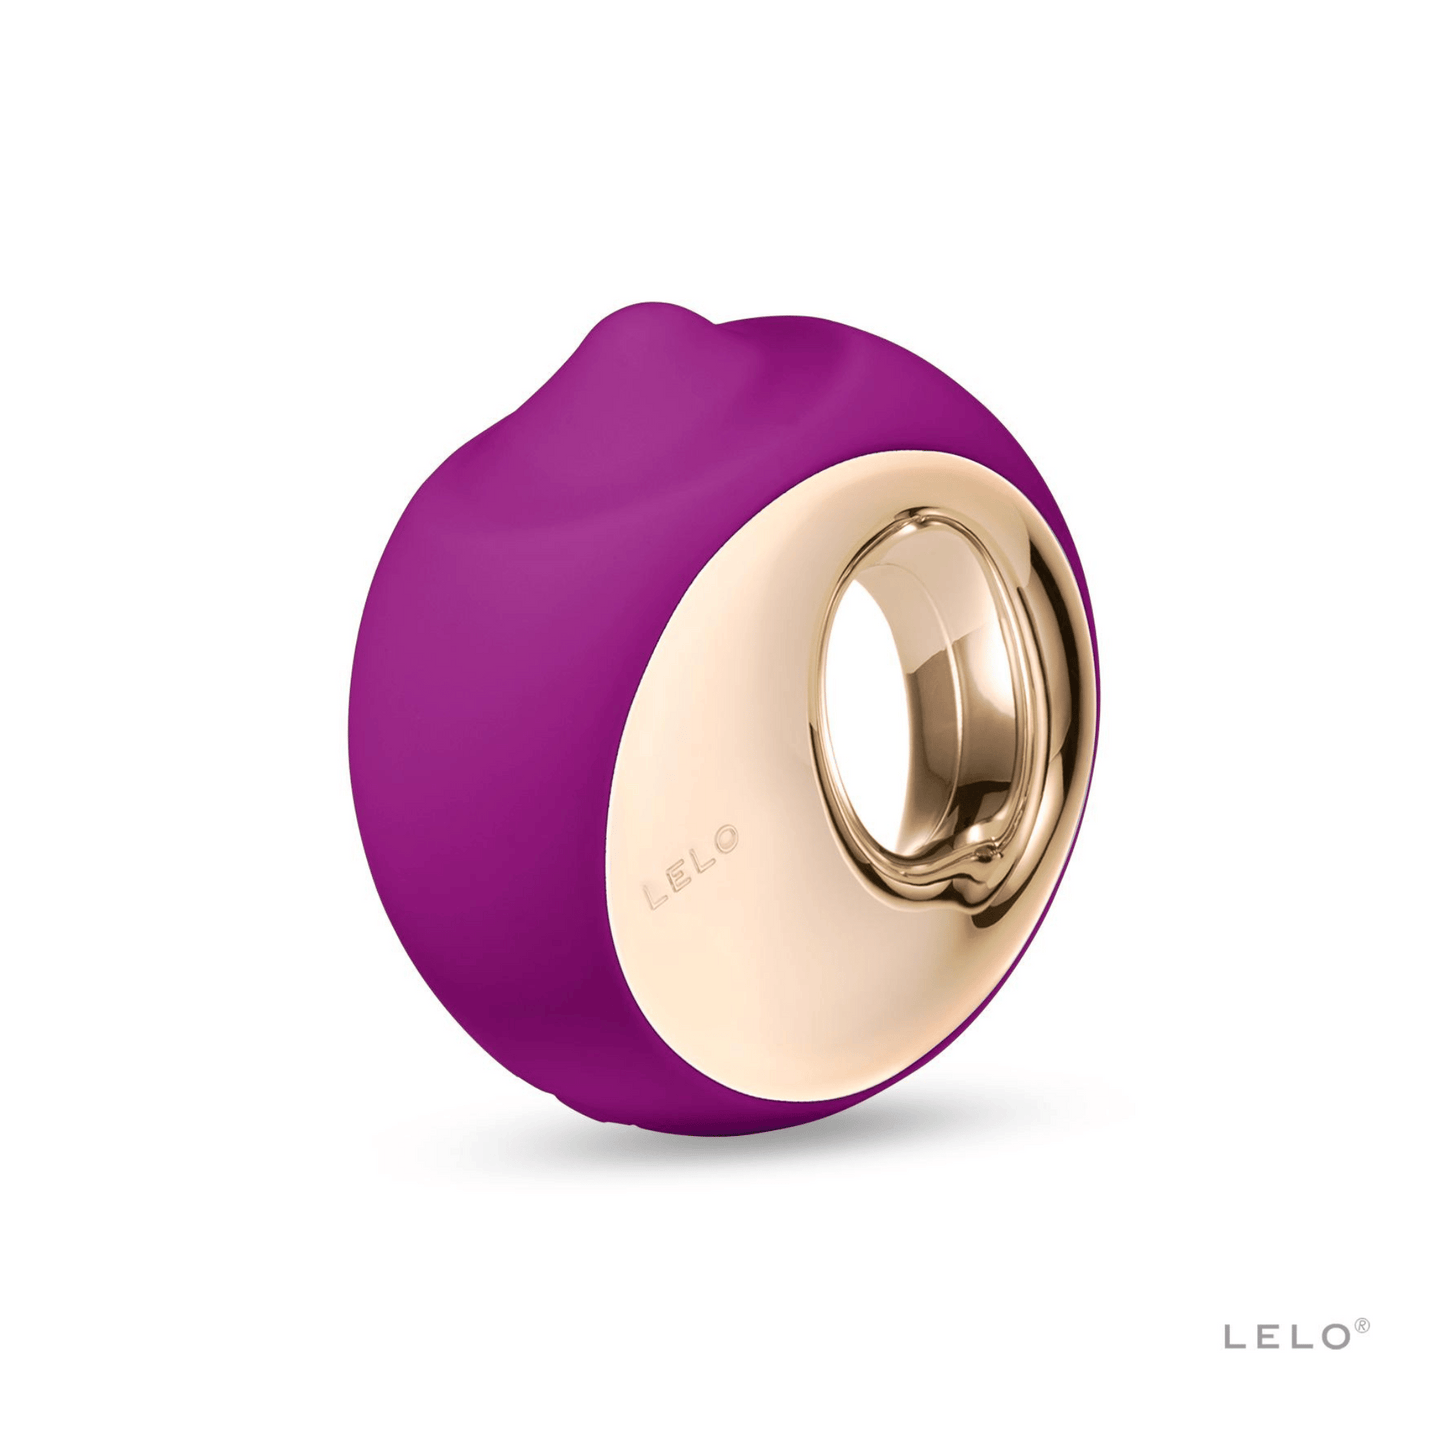 Stimulateur clitoridien Ora 3 de Lelo en couleur violet profond, design ergonomique pour une simulation orale, disponible chez OhMyGodz.fr, le choix par excellence pour des sextoys de luxe